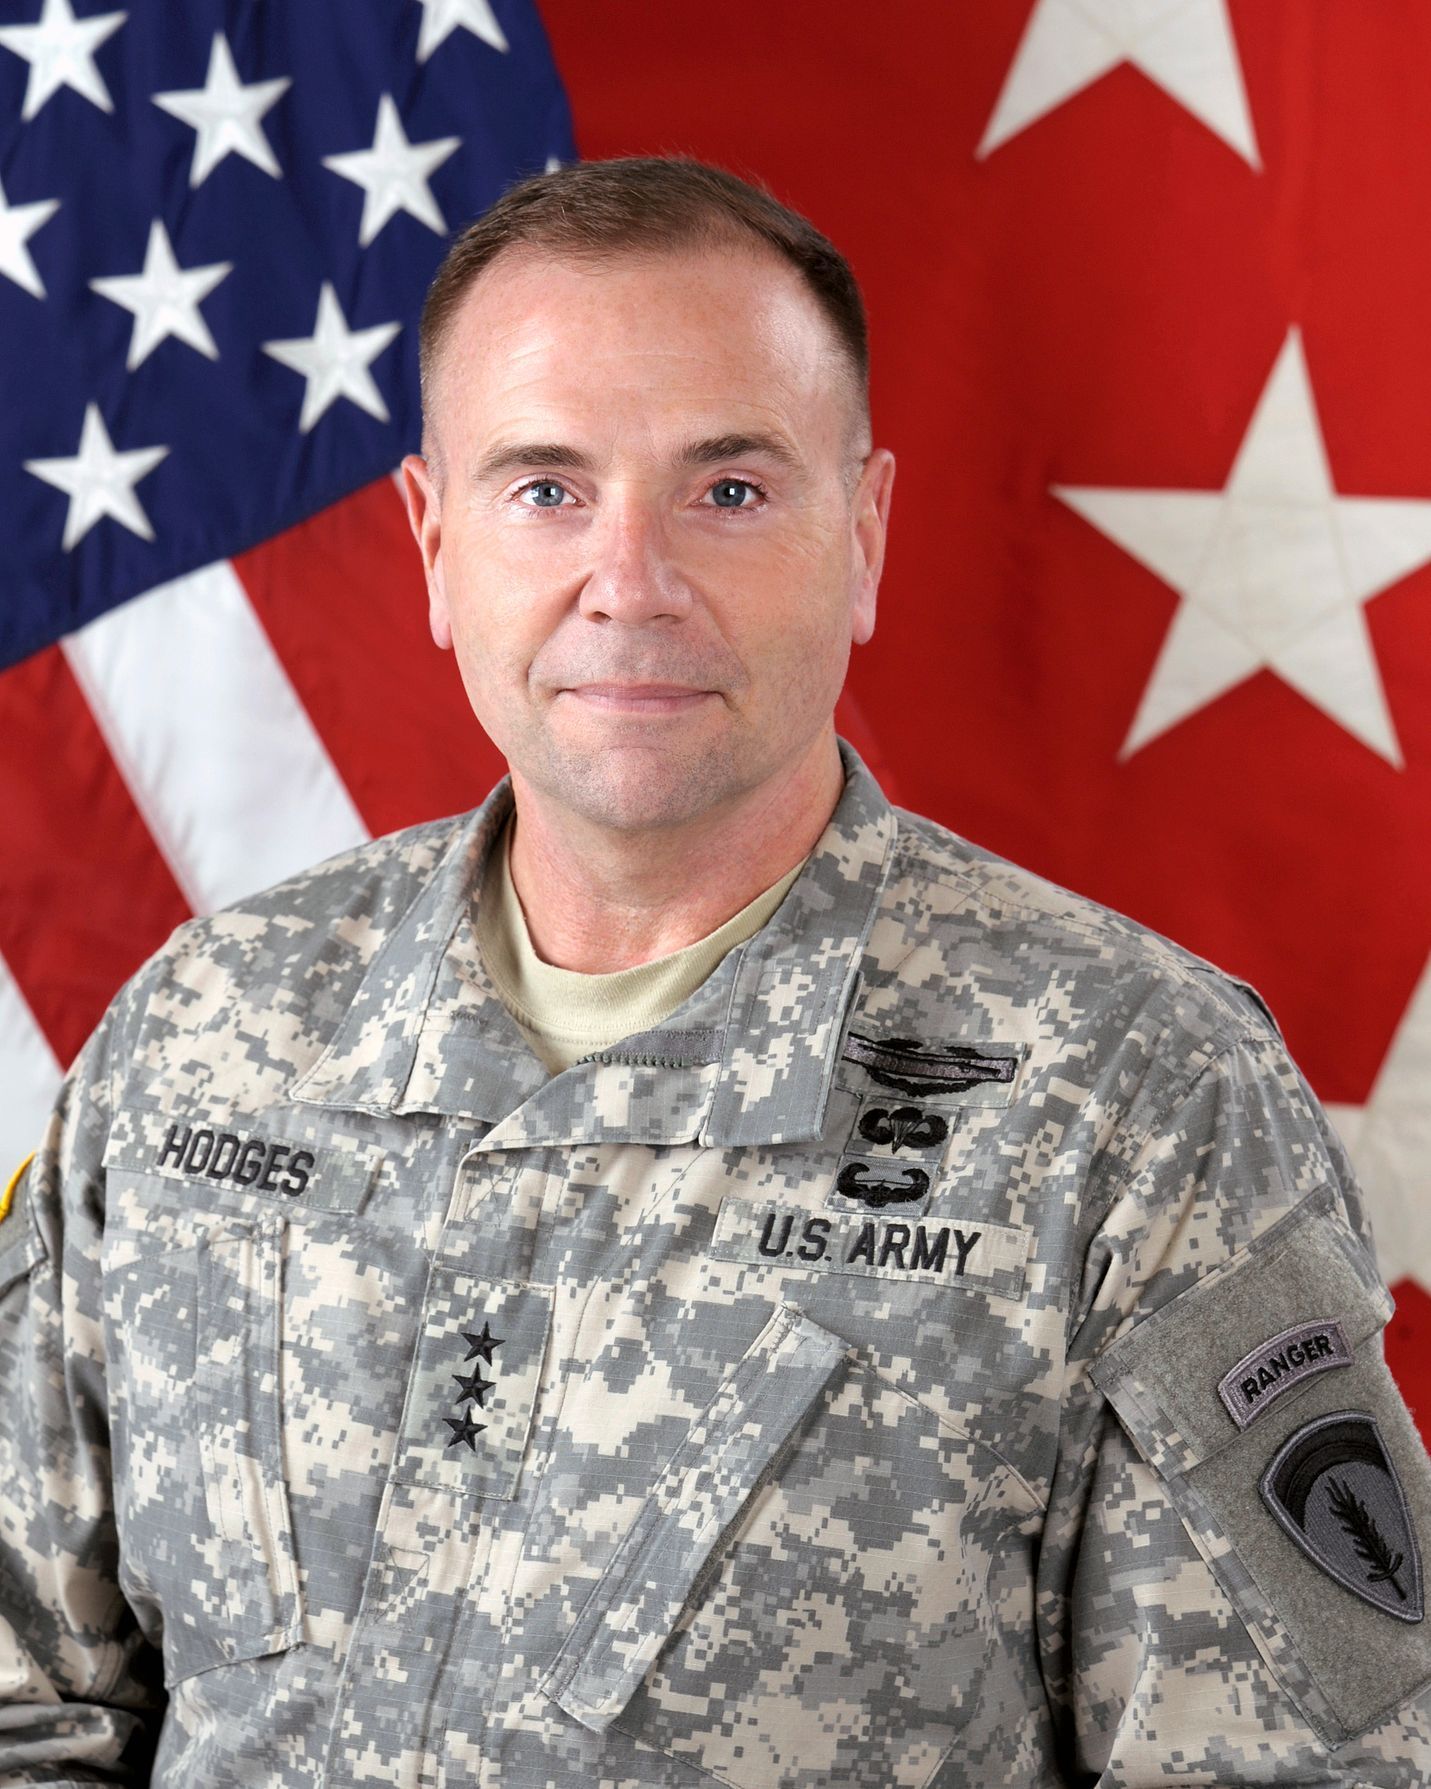 Velitel US Army v Evropě Frederick "Ben" Hodges